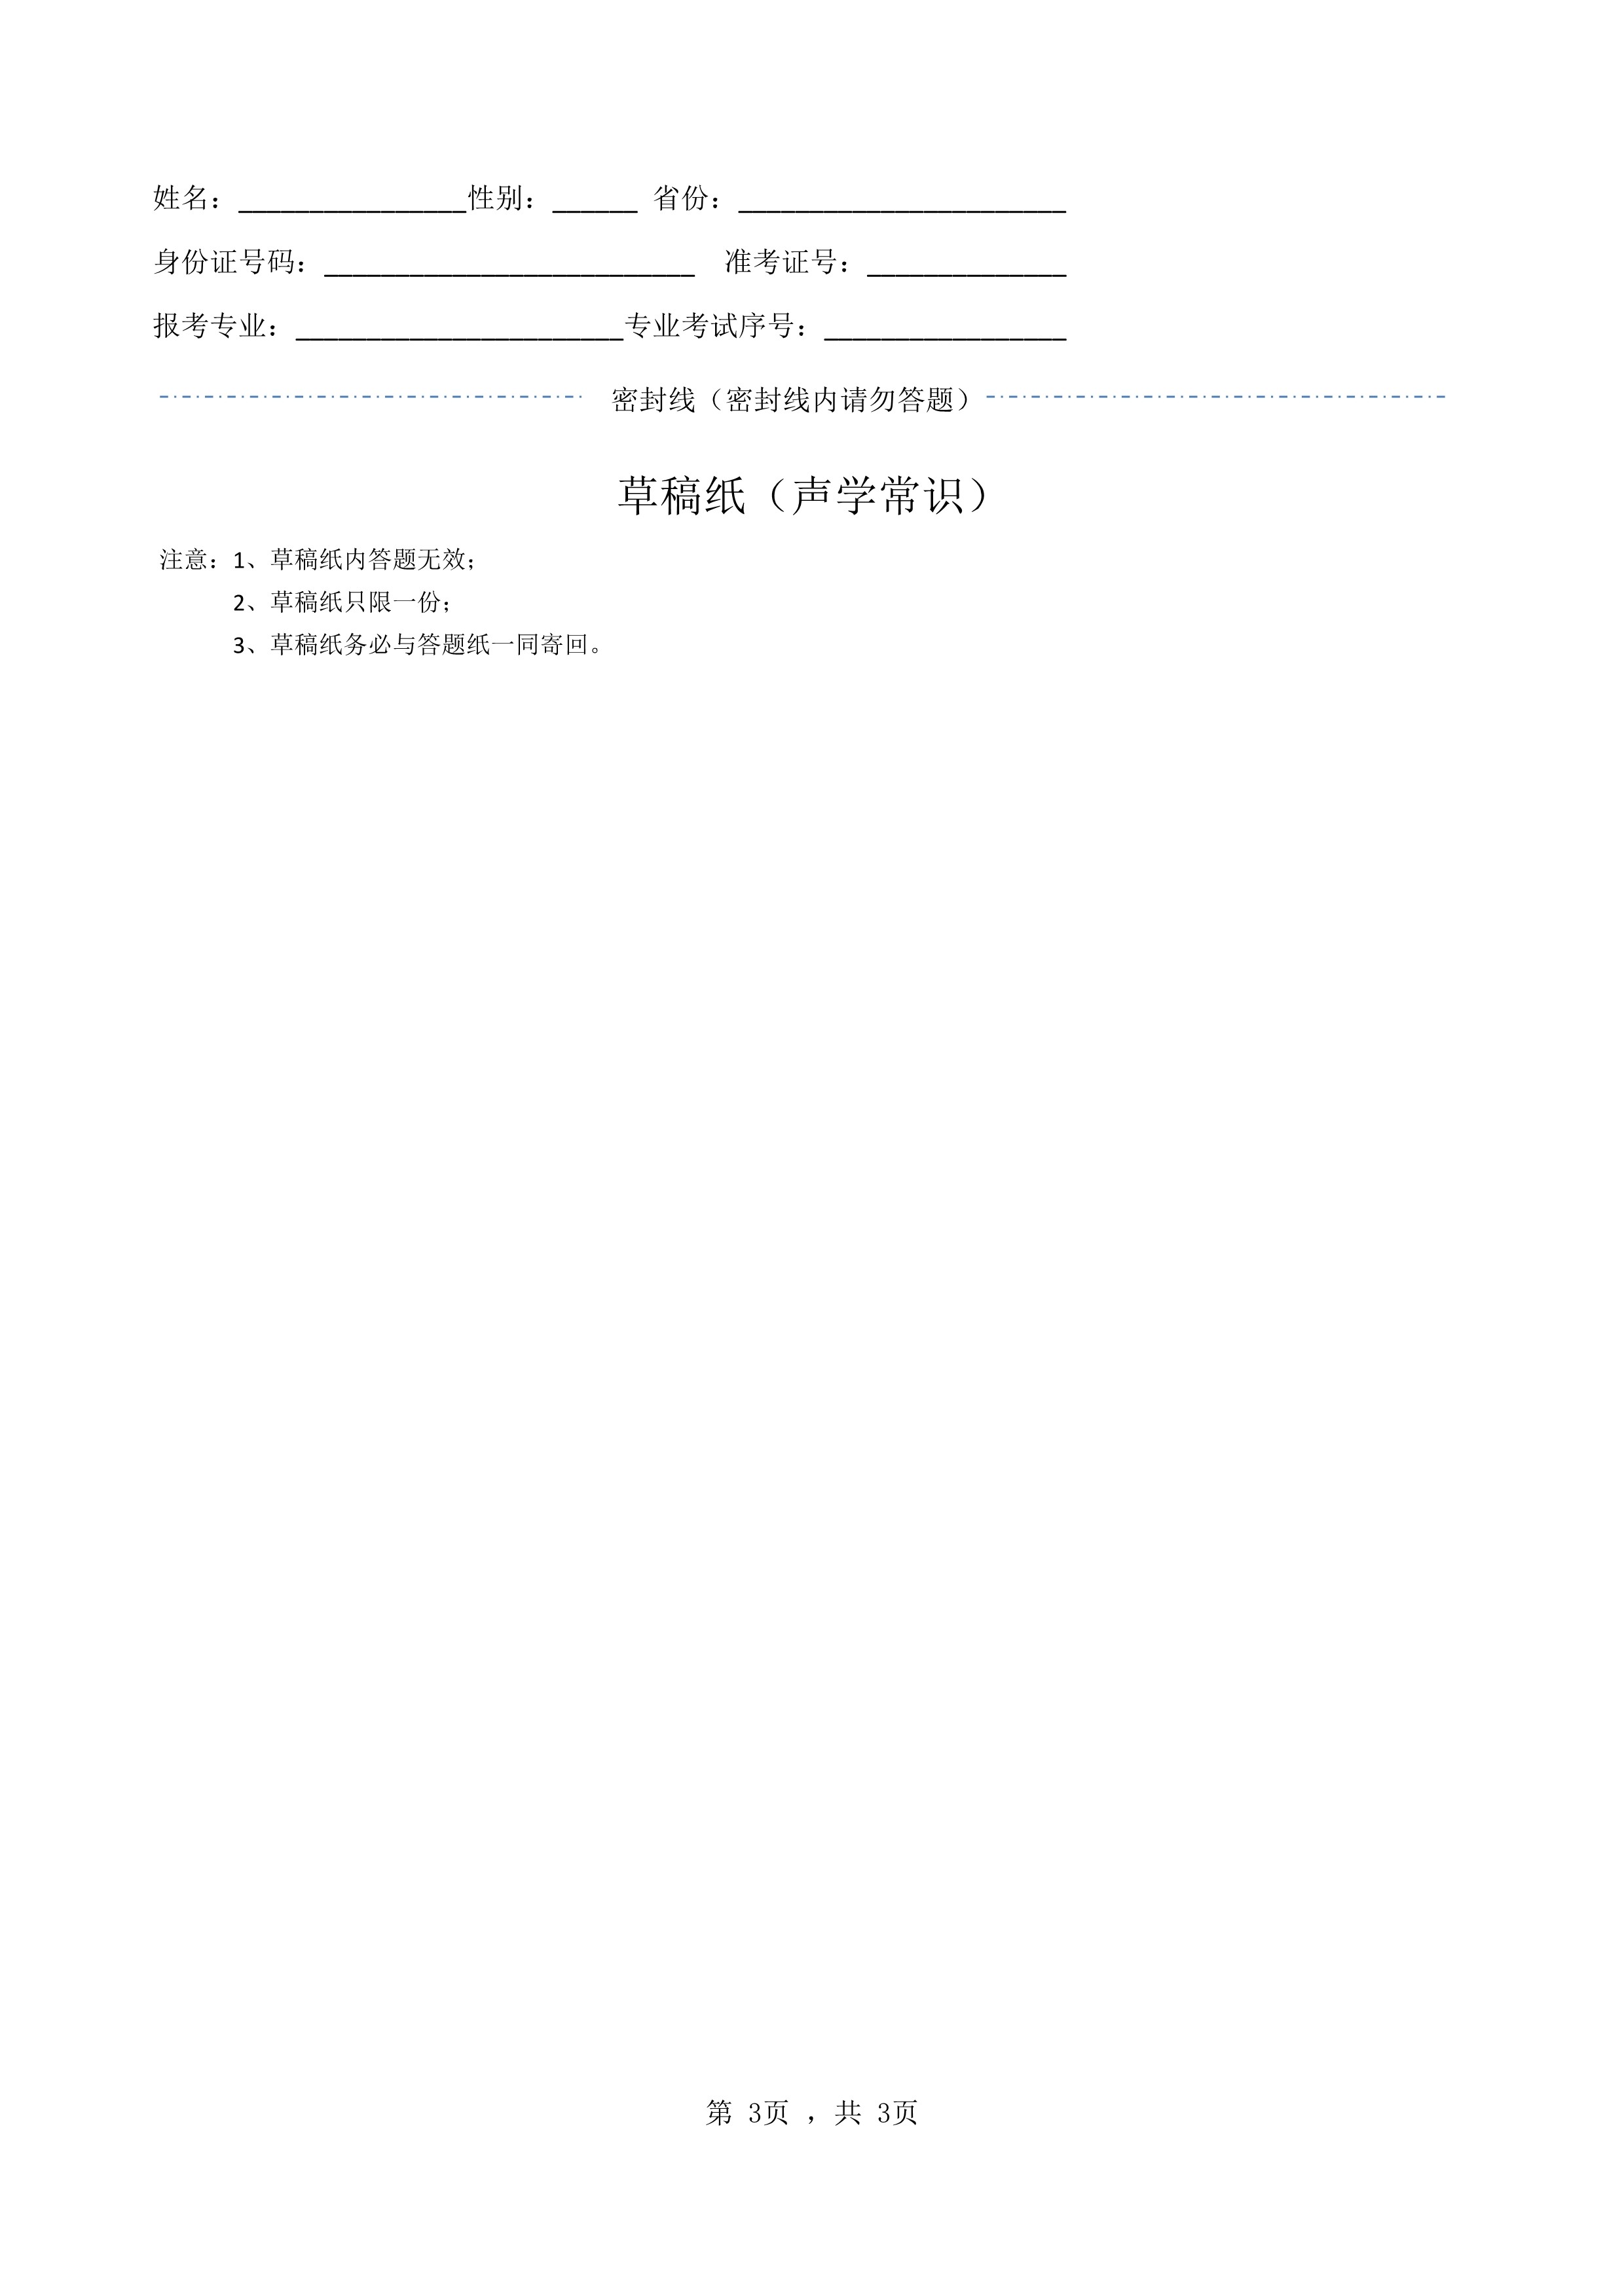 南京艺术学院2022年本科招生录音艺术专业《声学常识》科目考试答题纸及草稿纸_3.jpg